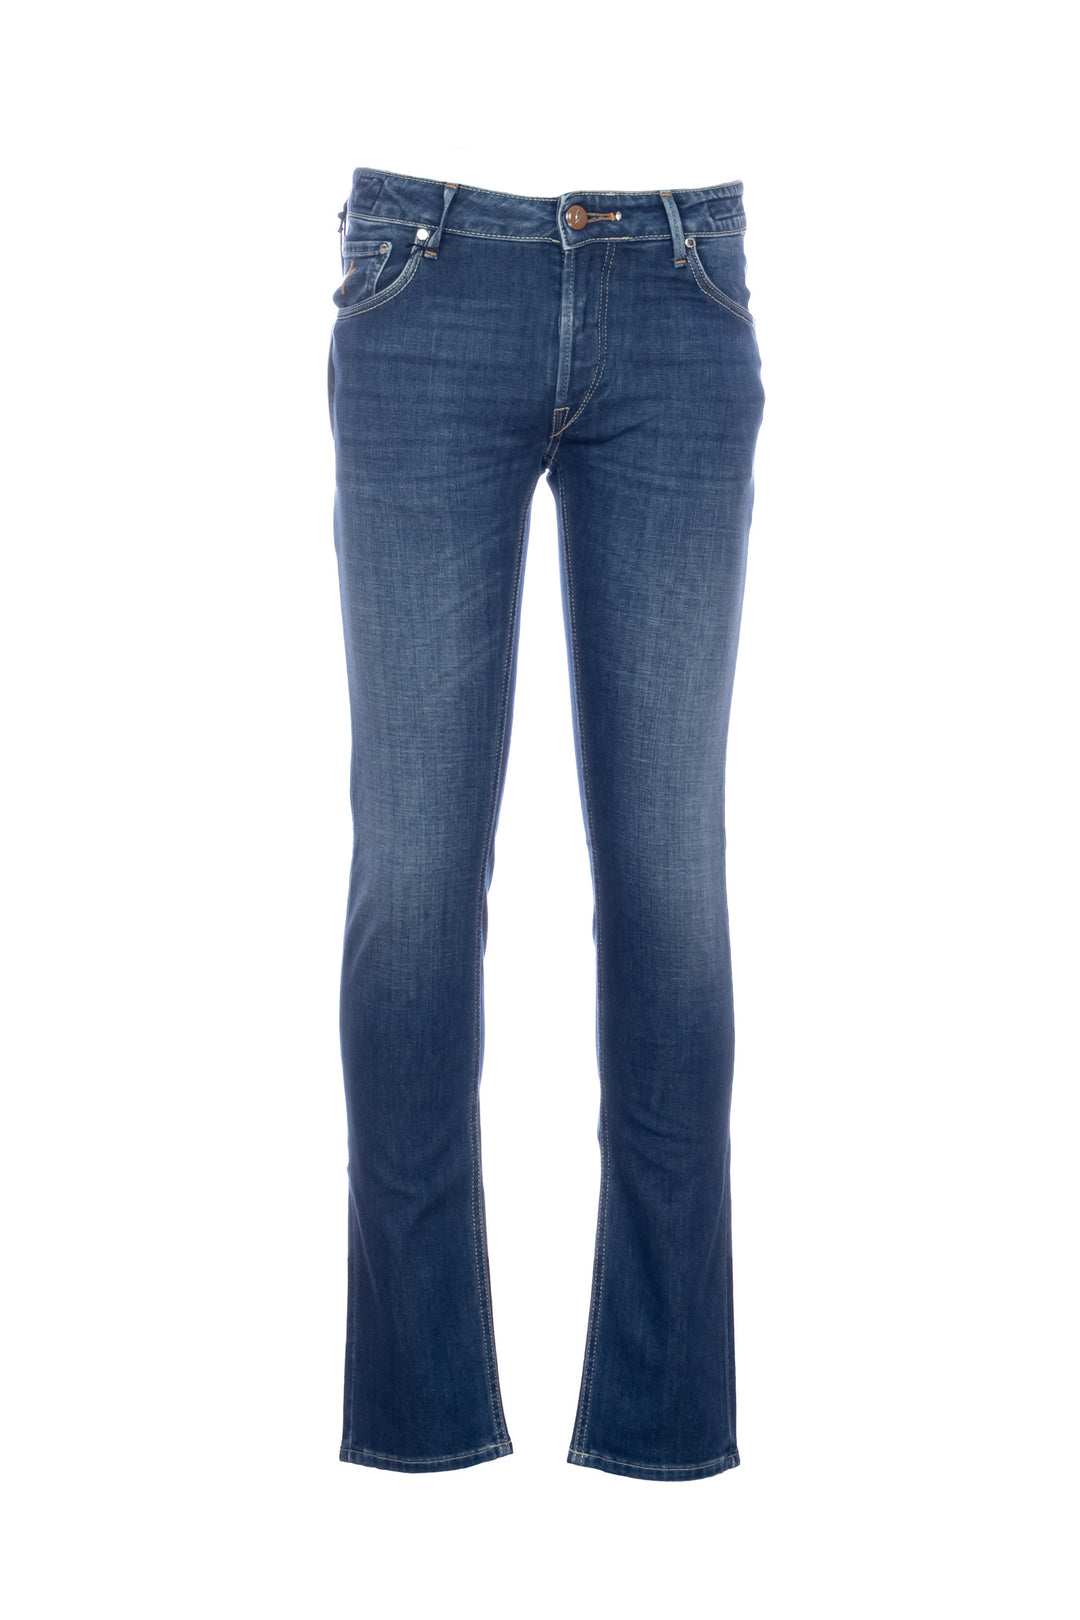 HANDPICKED Jeans 5 tasche “ORVIETO-C” in denim stretch lavaggio medio 12 - Mancinelli 1954